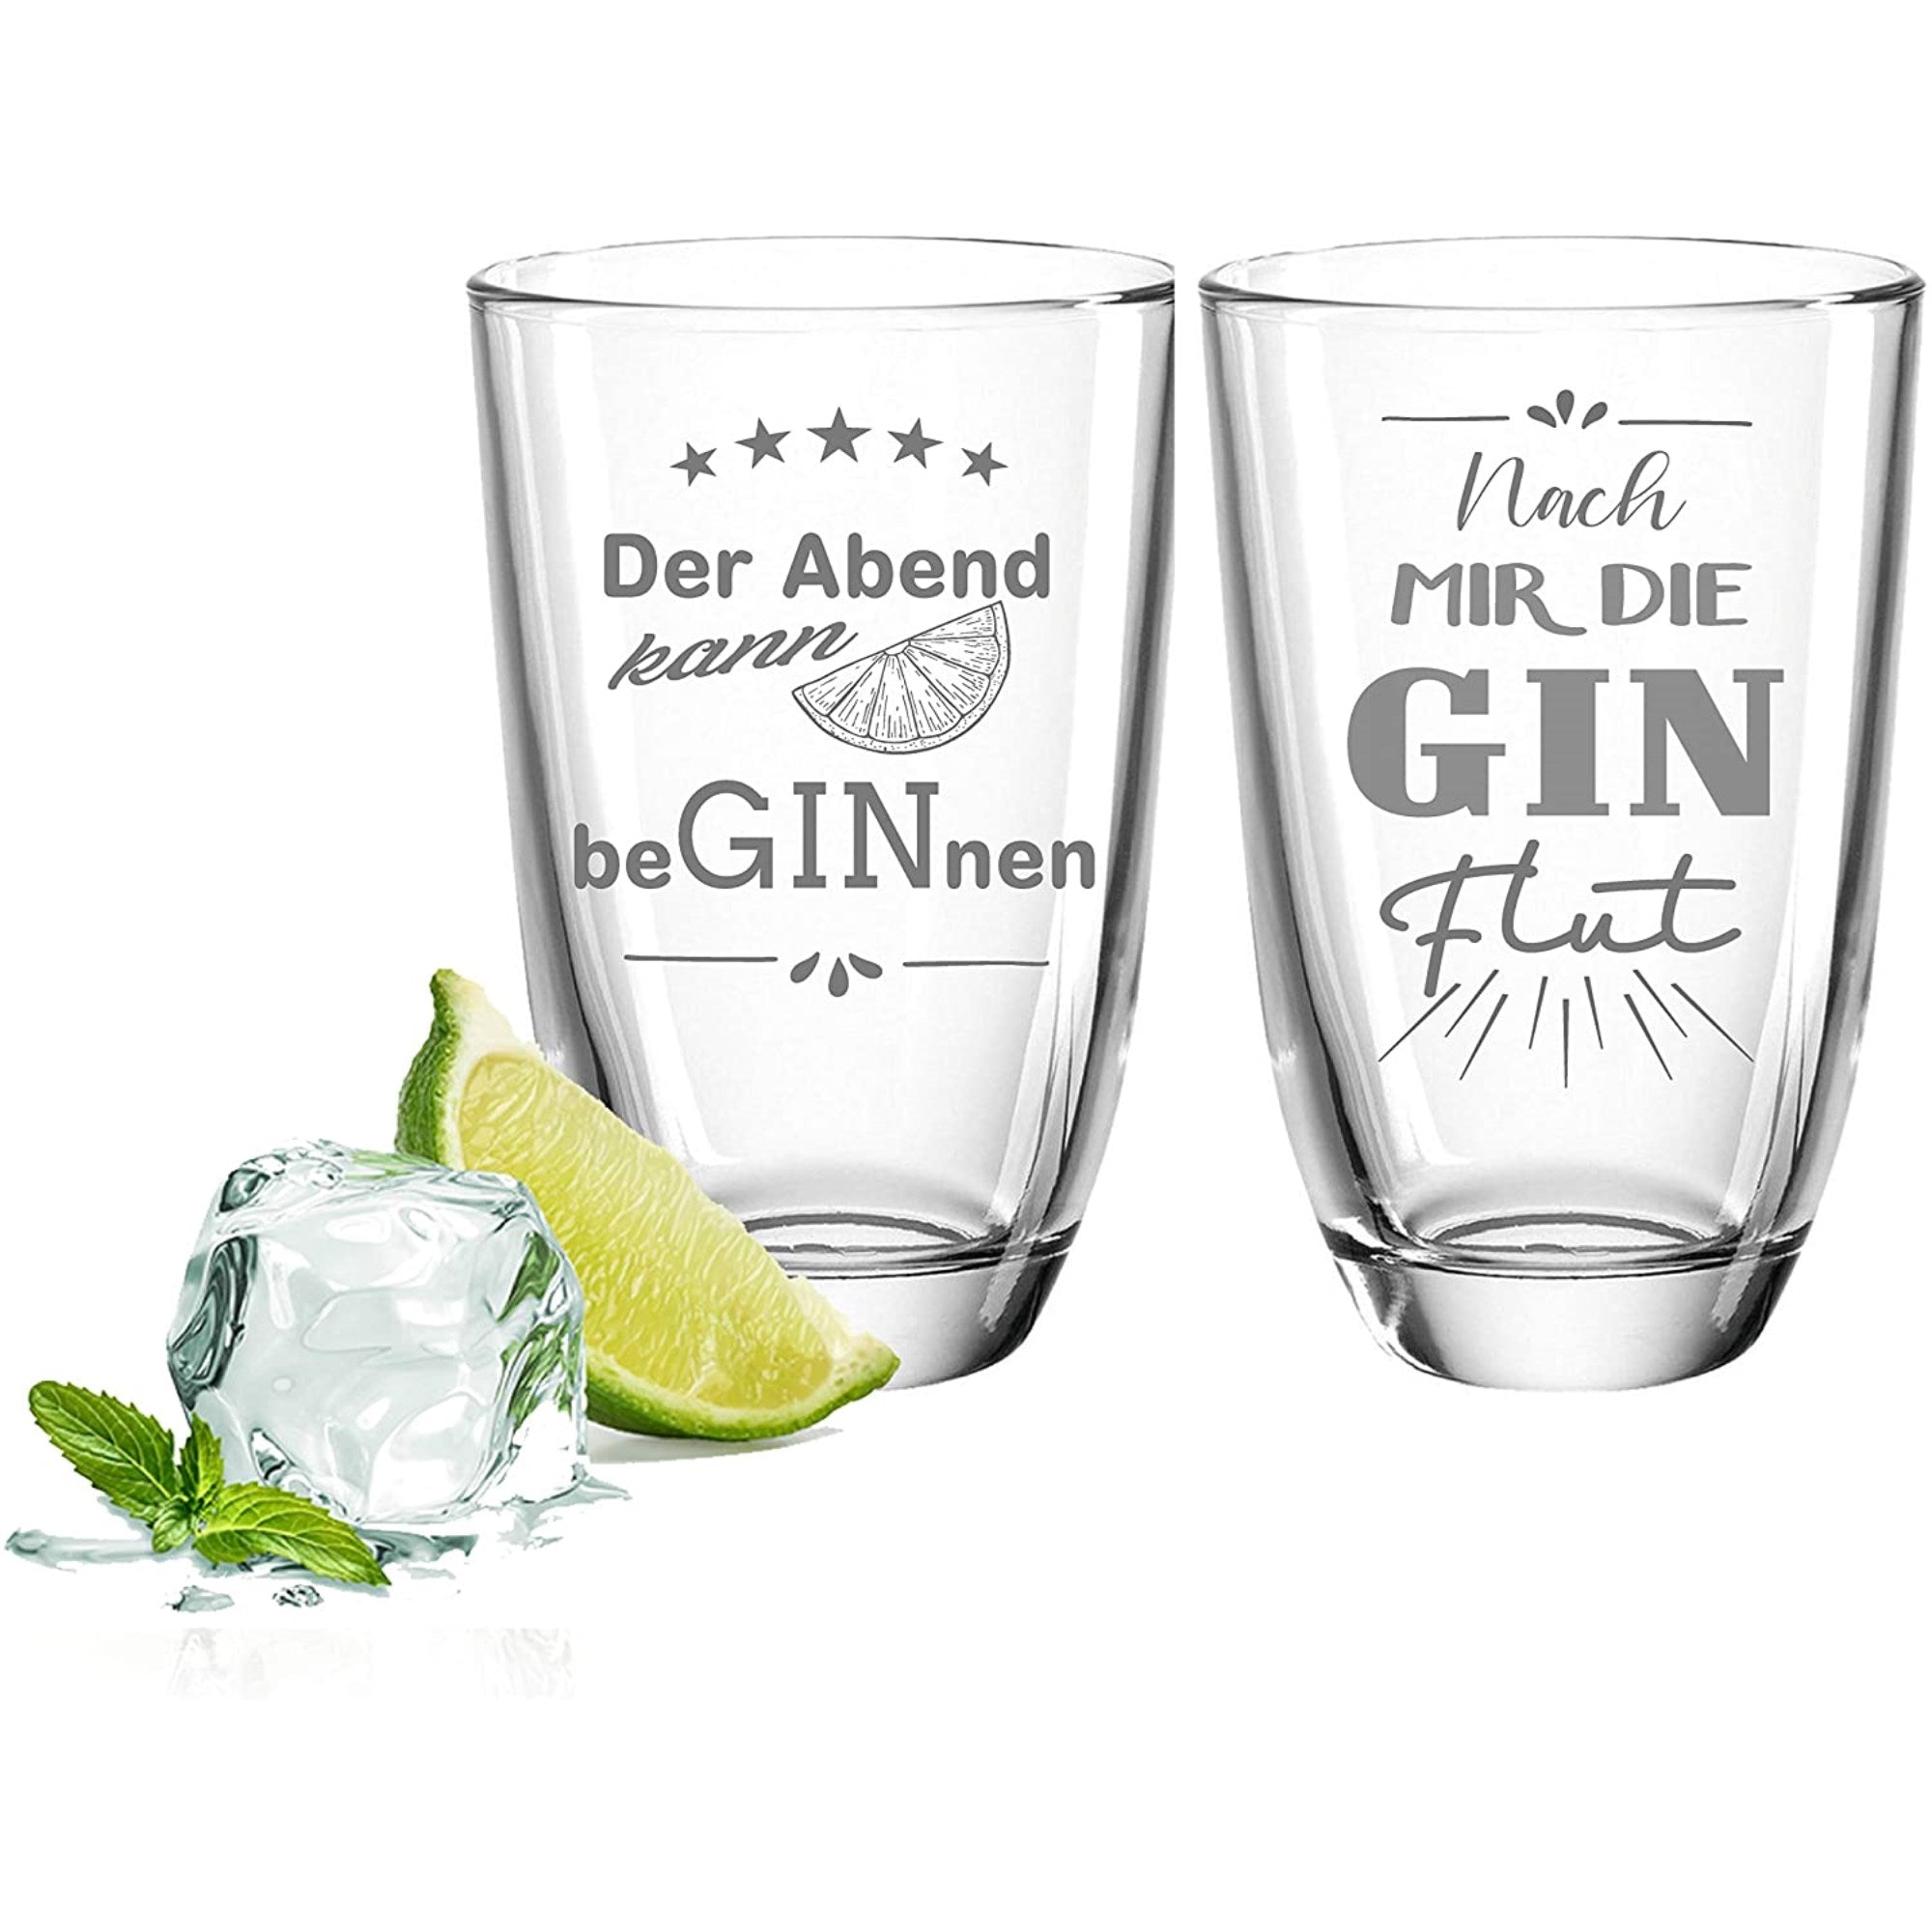 2er Set Gin-Gläser - "Ginflut" & "Der Abend"